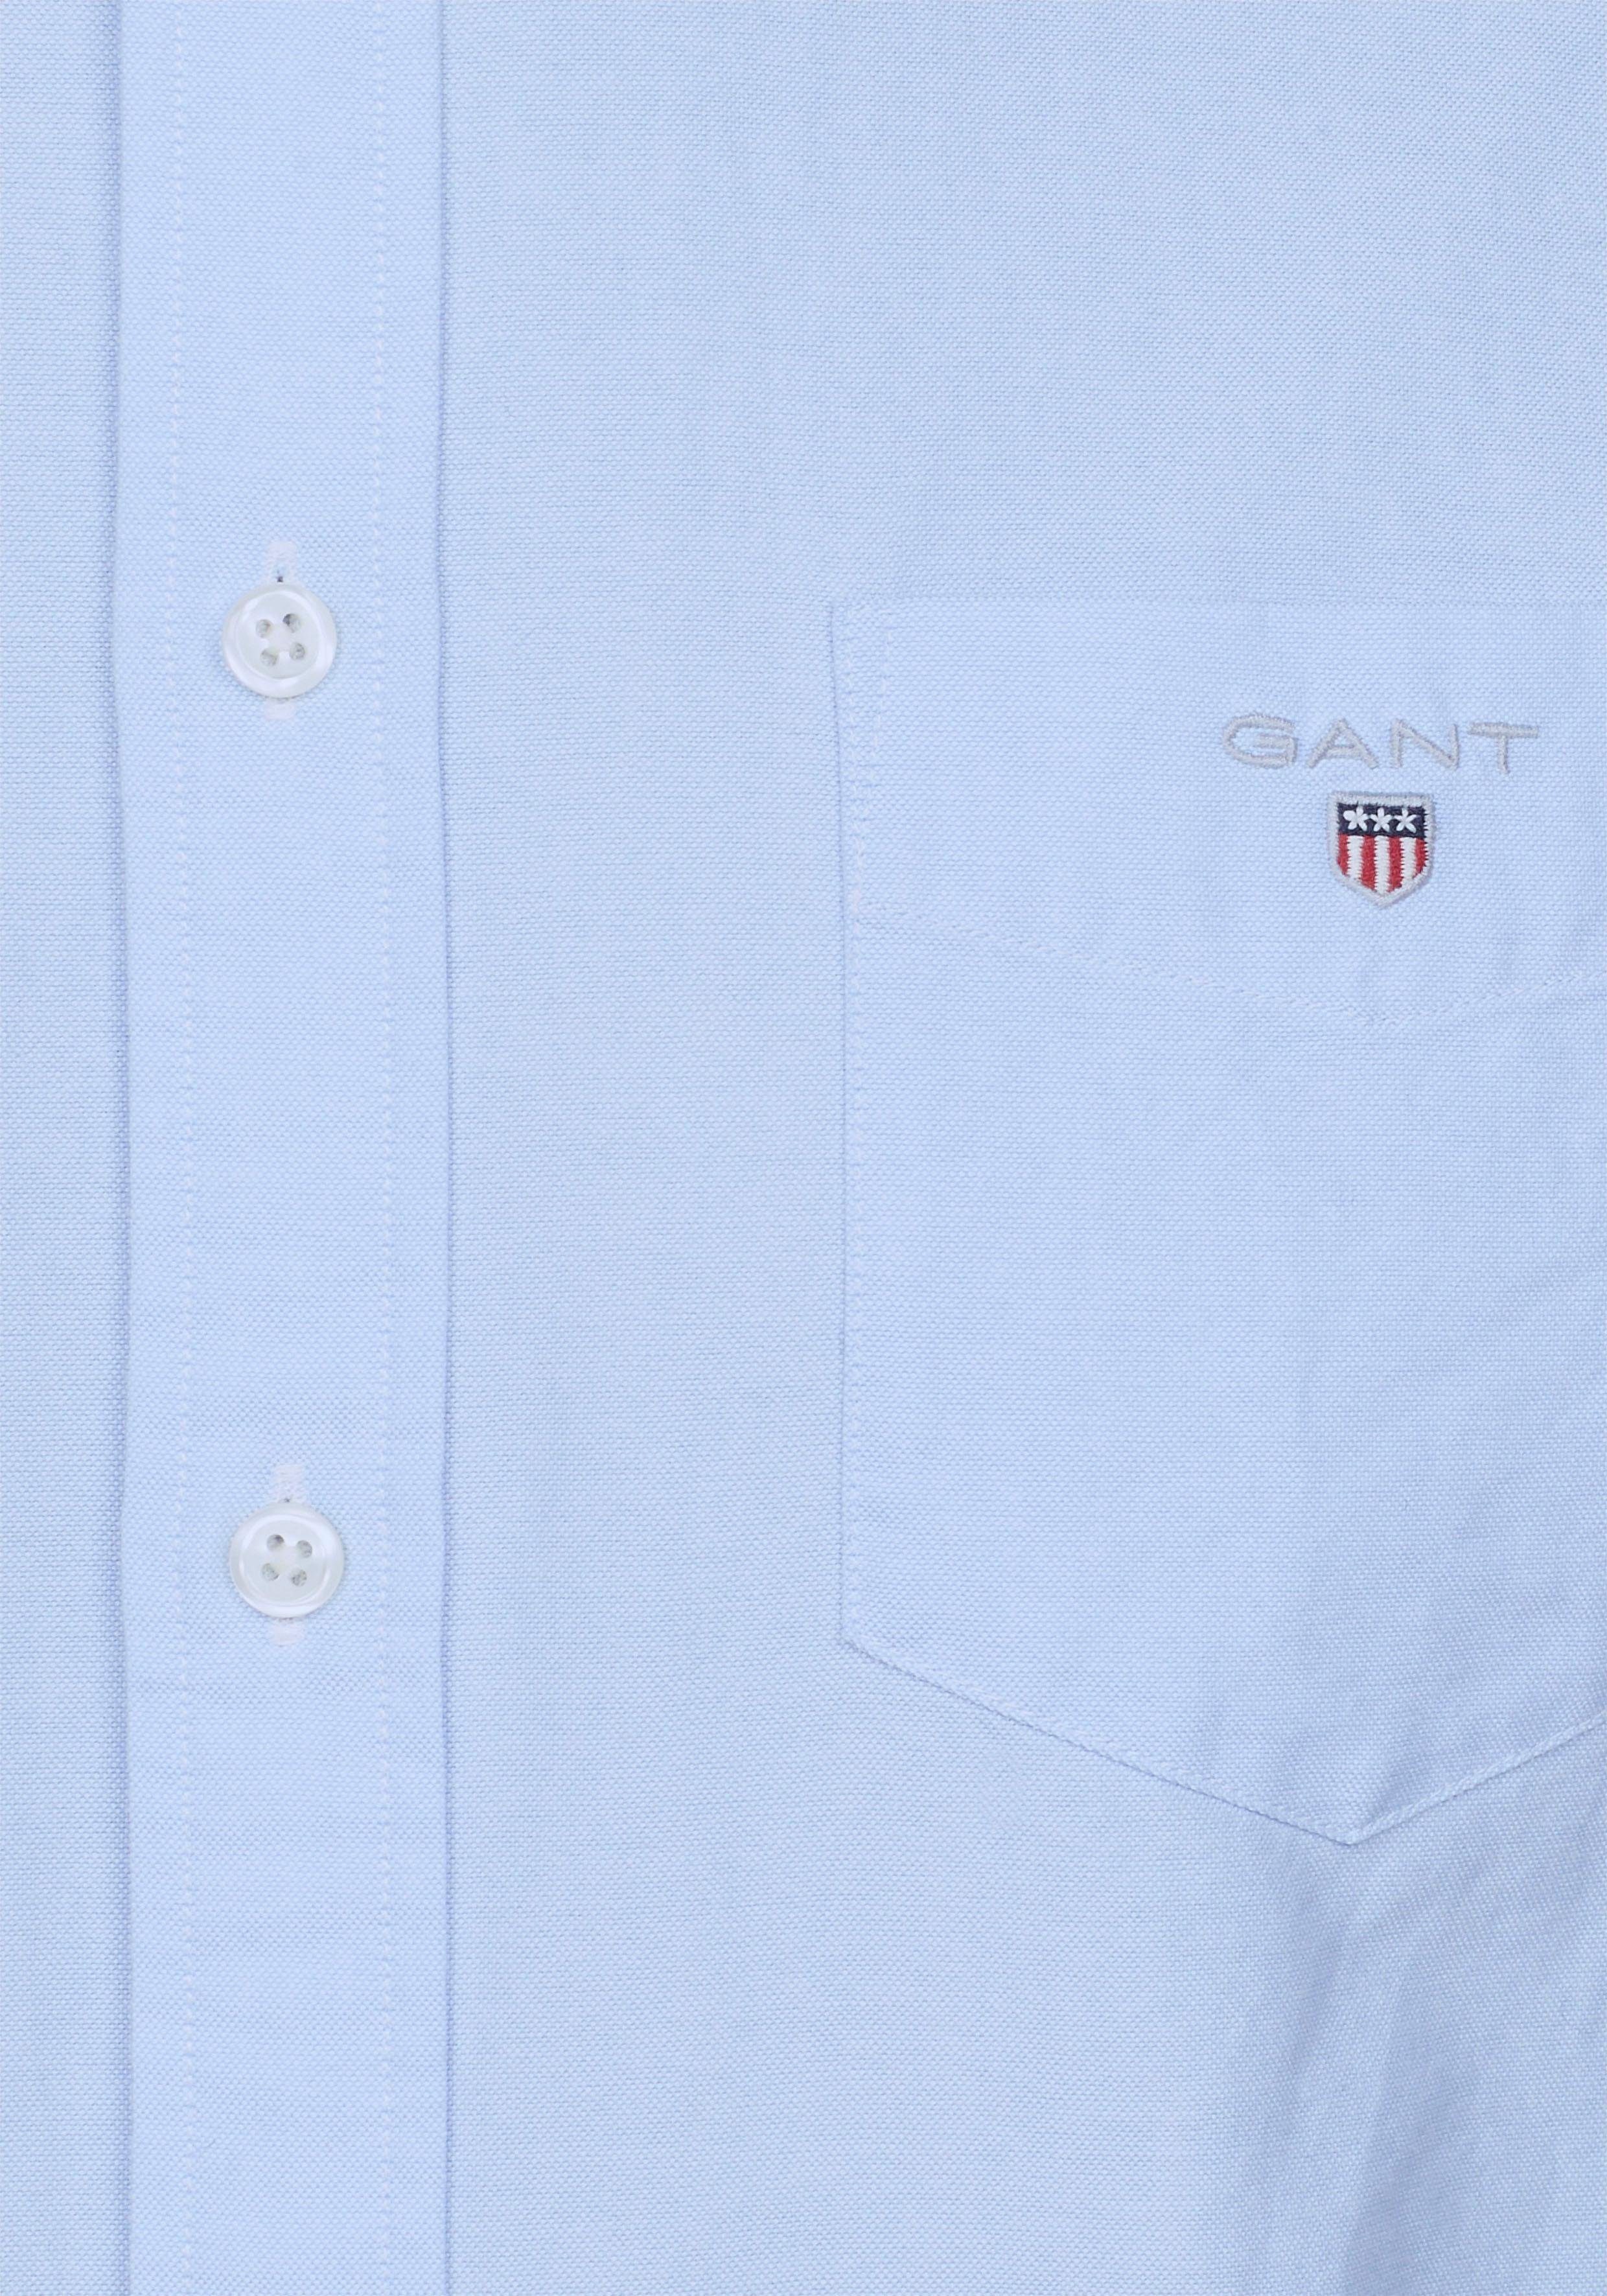 capri Gant blue Langarmhemd der Brusttasche Oxford auf mit Logostickerei